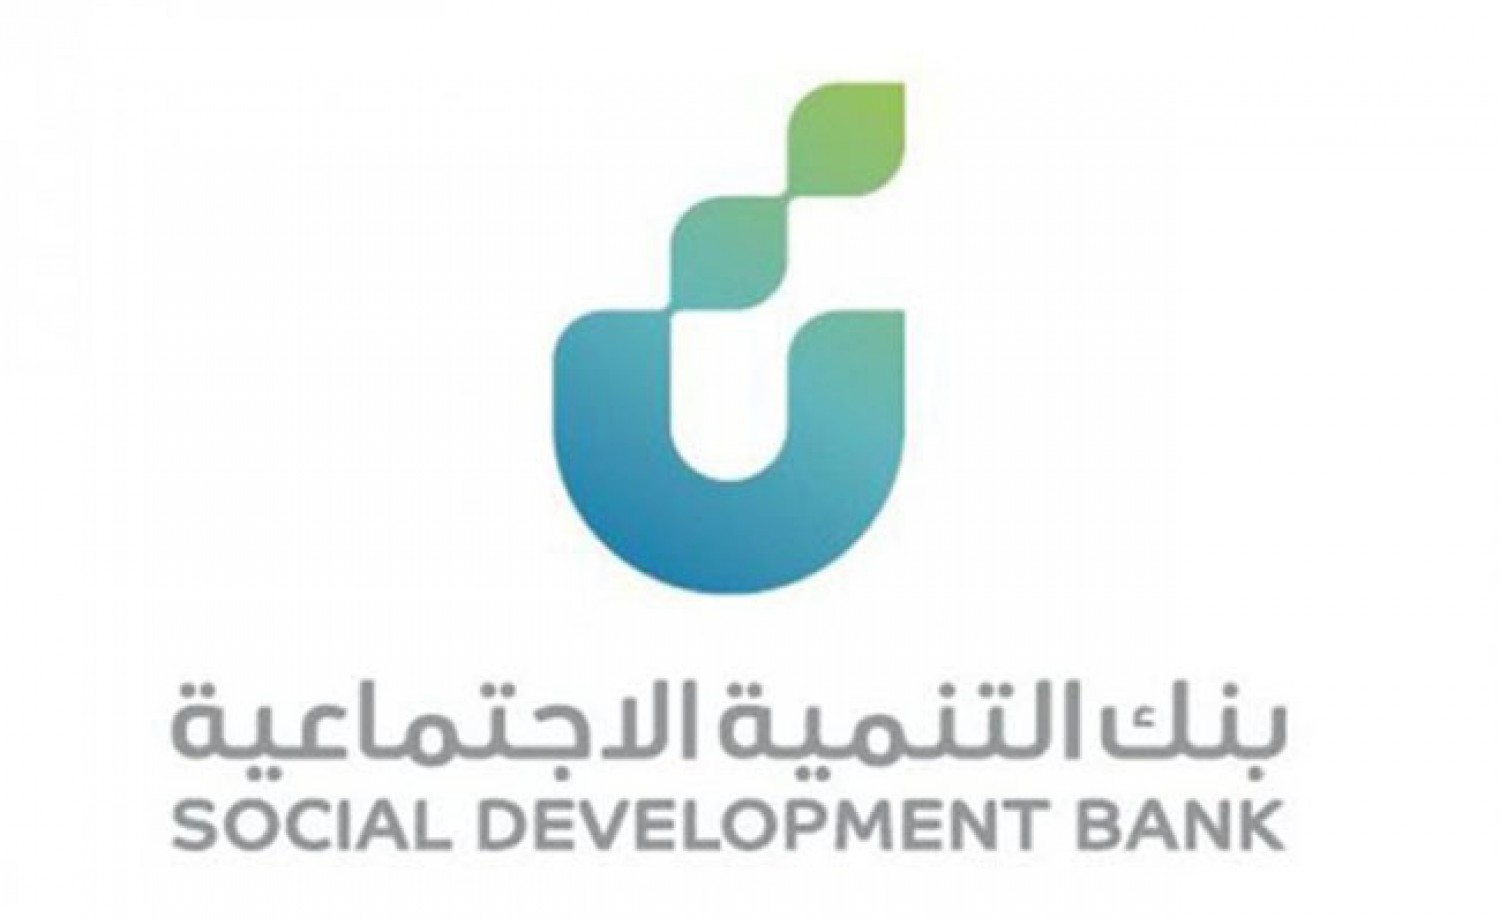 بنك التنمية الاجتماعية يوضح شروط قرض العمل الحر وخطوات التقديم